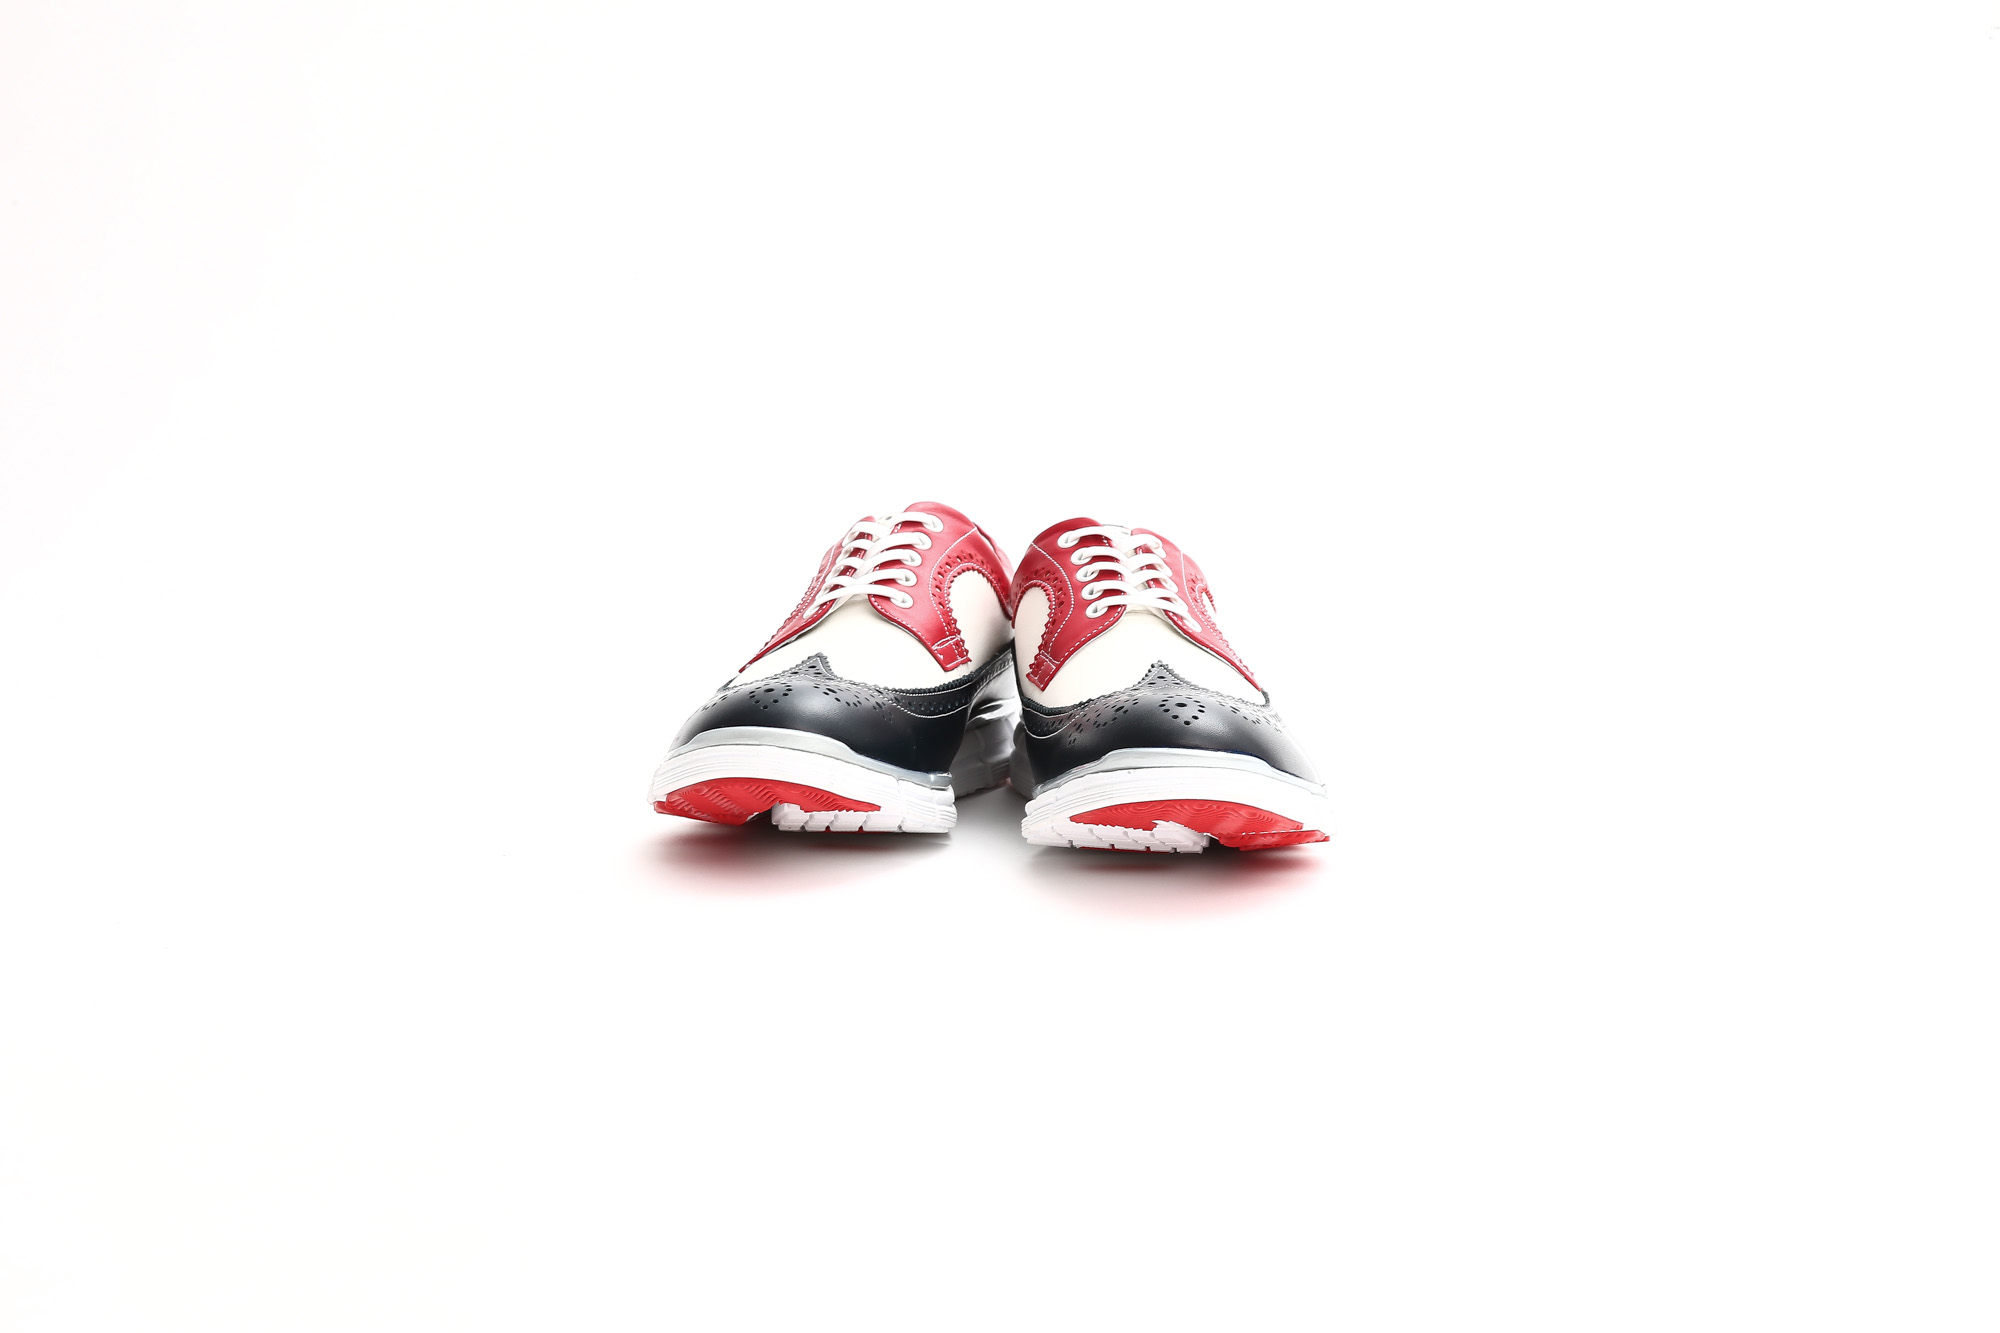 【HIROSHI TSUBOUCHI / ヒロシツボウチ】 HTO-AD05 Wingtip Sneakers トリコロールカラー Calf Leather カーフレザー ウィングチップ スニーカー NAVY / WHITE / RED (ネイビー / ホワイト / レッド・NV/WH/RE) Made in Japan (日本製) 2017 秋冬新作　hiroshitsubouchi ヒロシツボウチ 木梨則武 ノリさん C.ロナウド クリスティアーノロナウド トリコカラー とんねるずのみなさんのおかげでした トリコロール